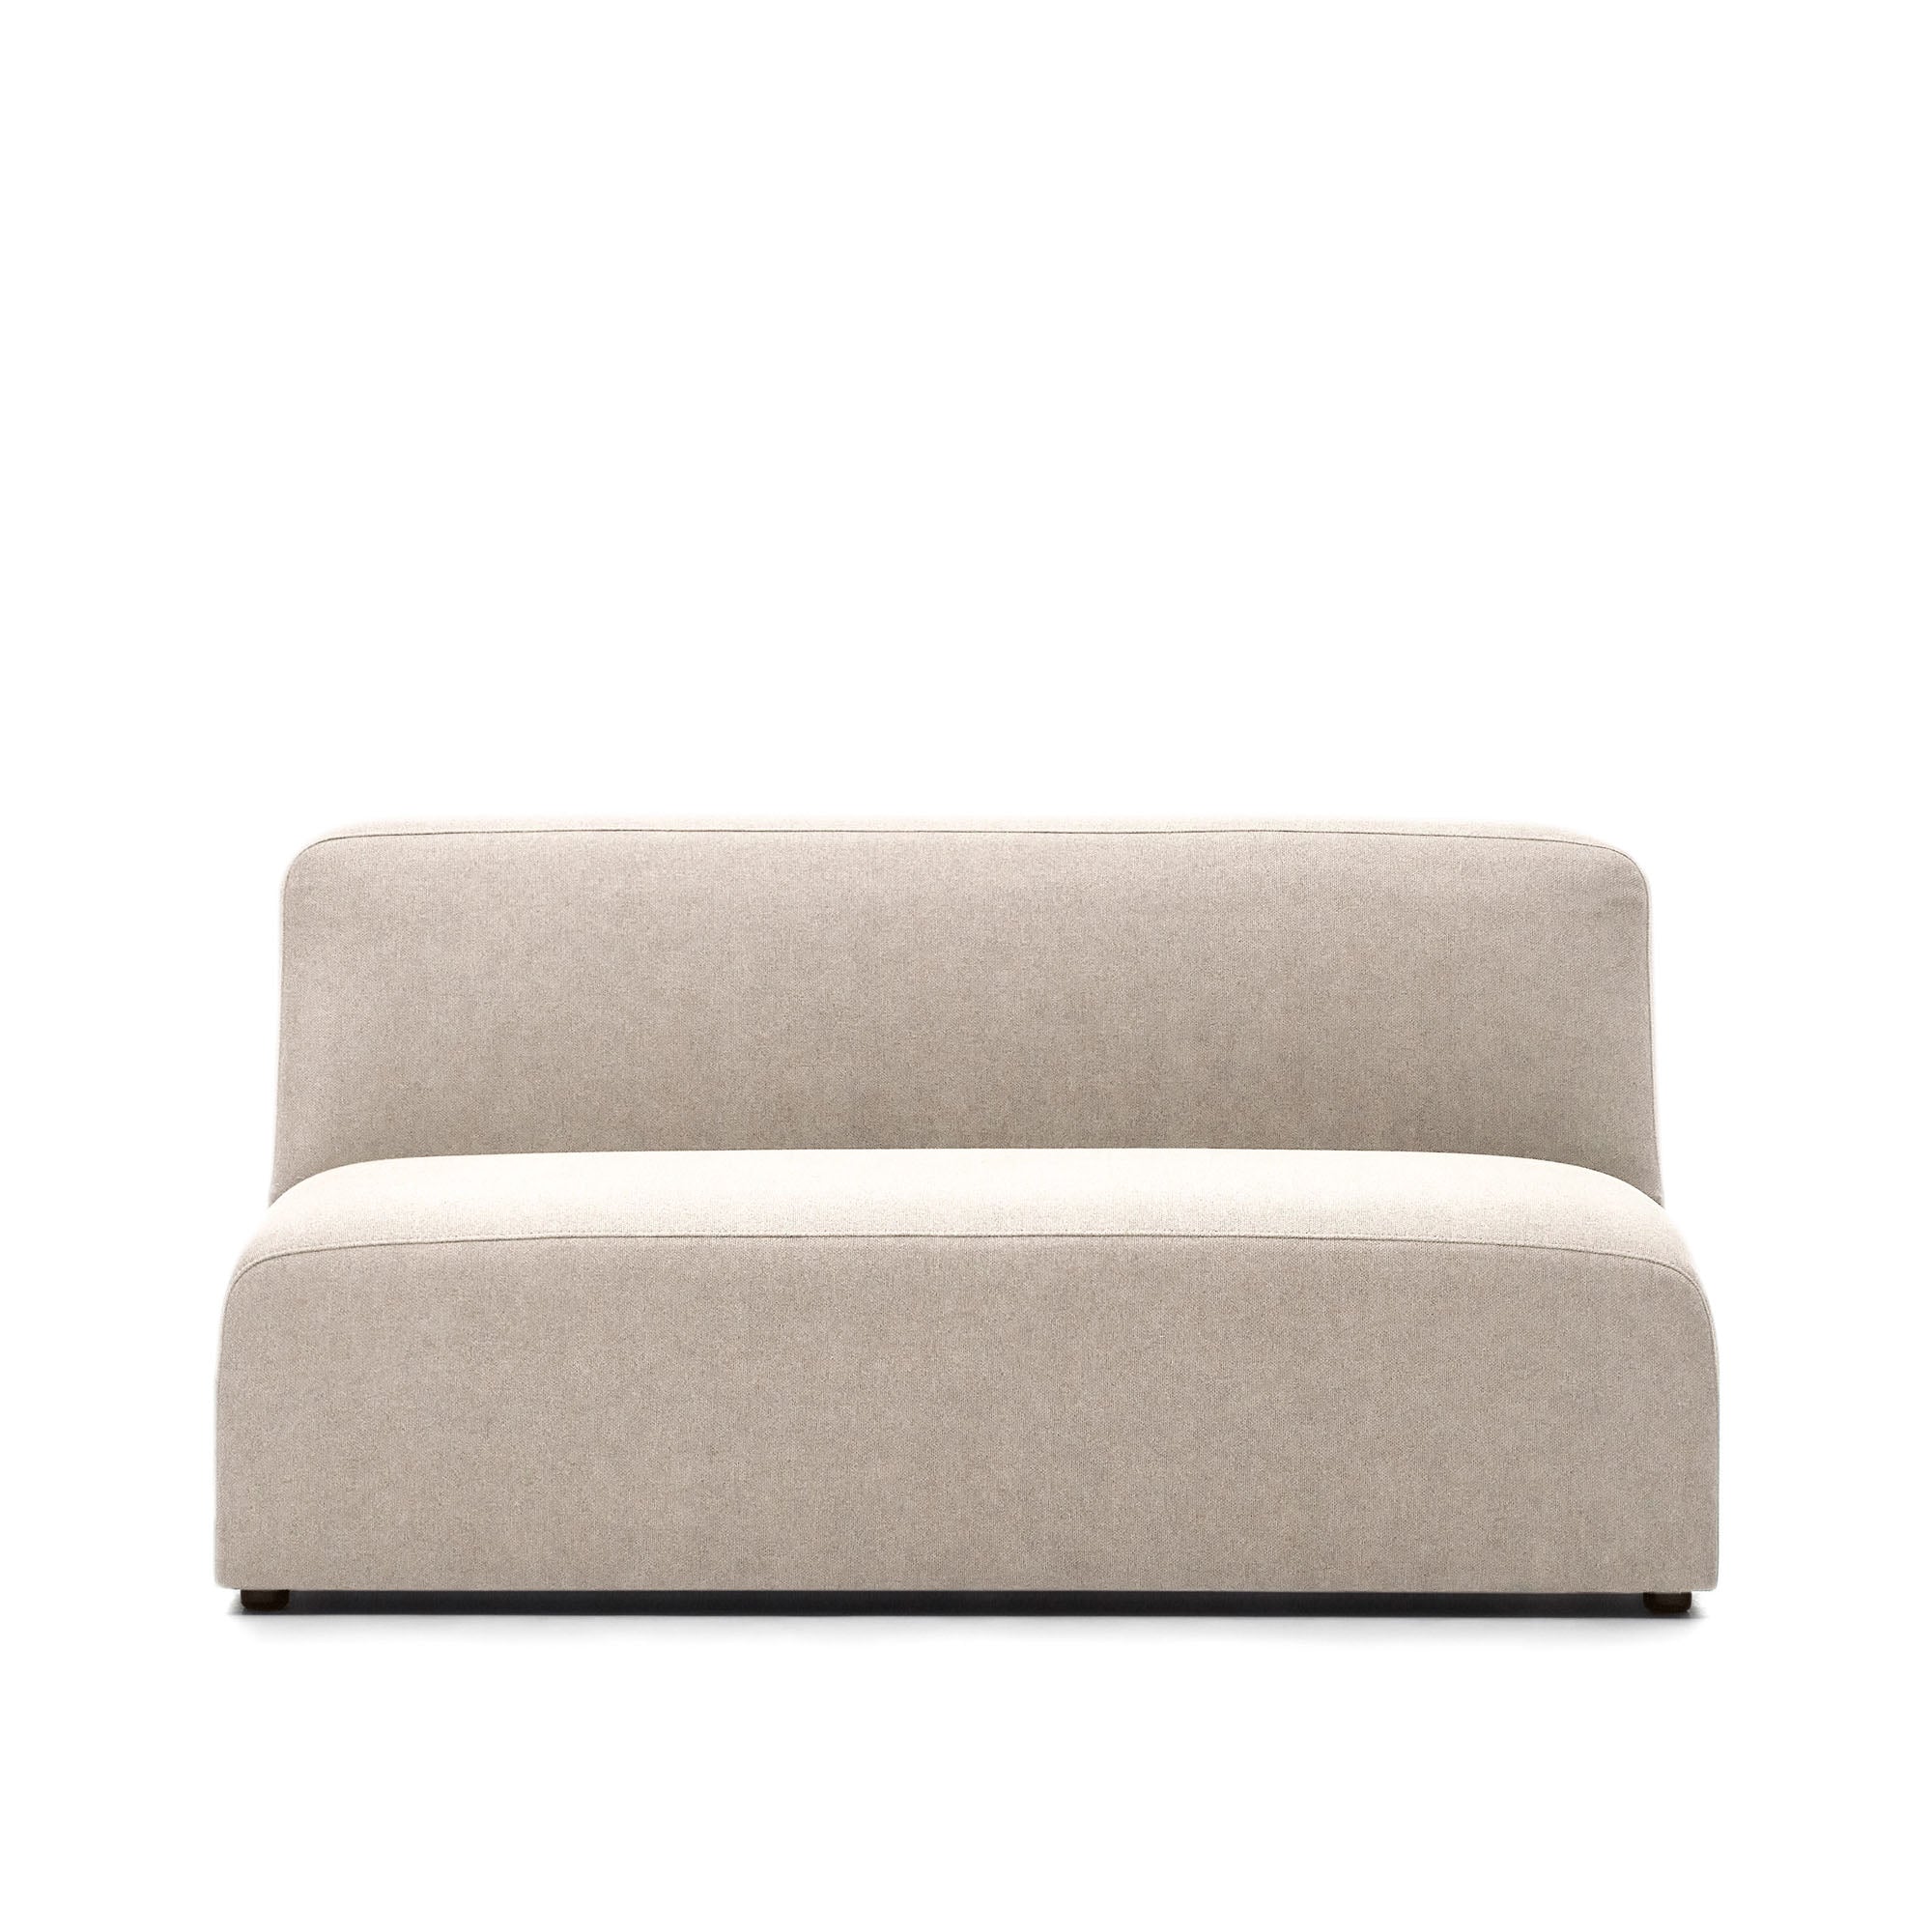 Neom 2 személyes kanapé modul bézs színben, 150 cm